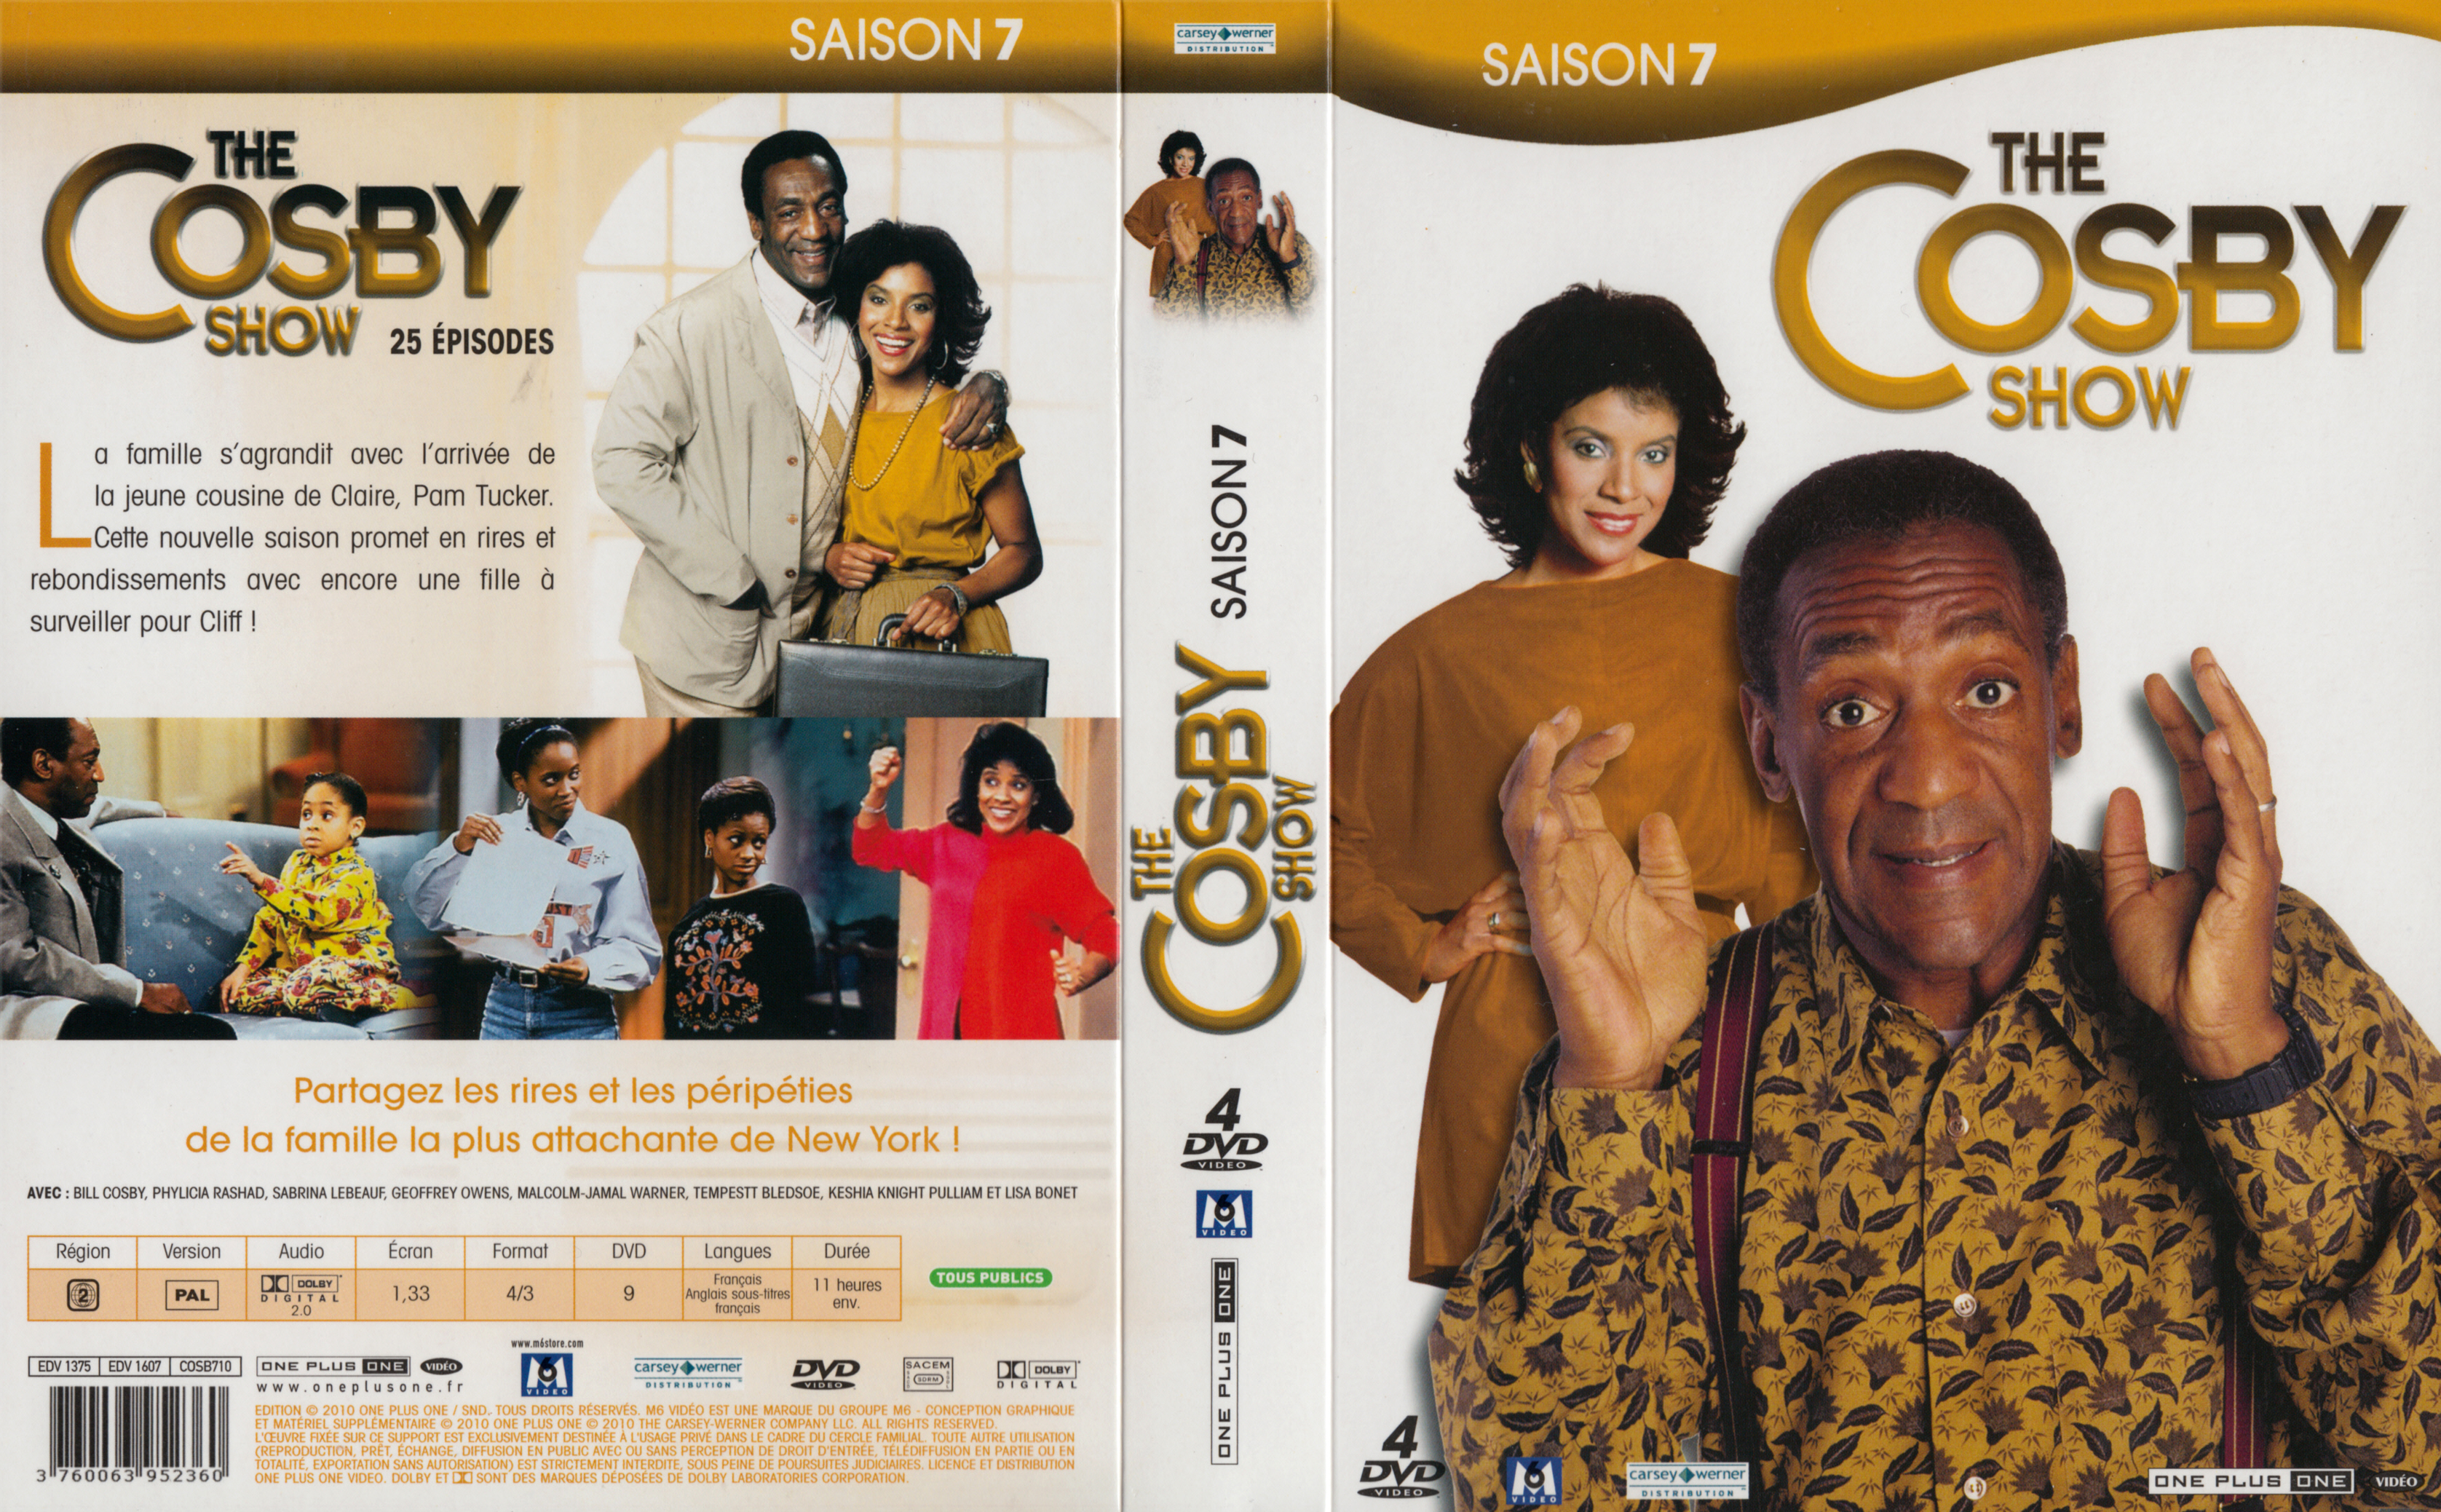 Jaquette DVD The Cosby show Saison 7 COFFRET